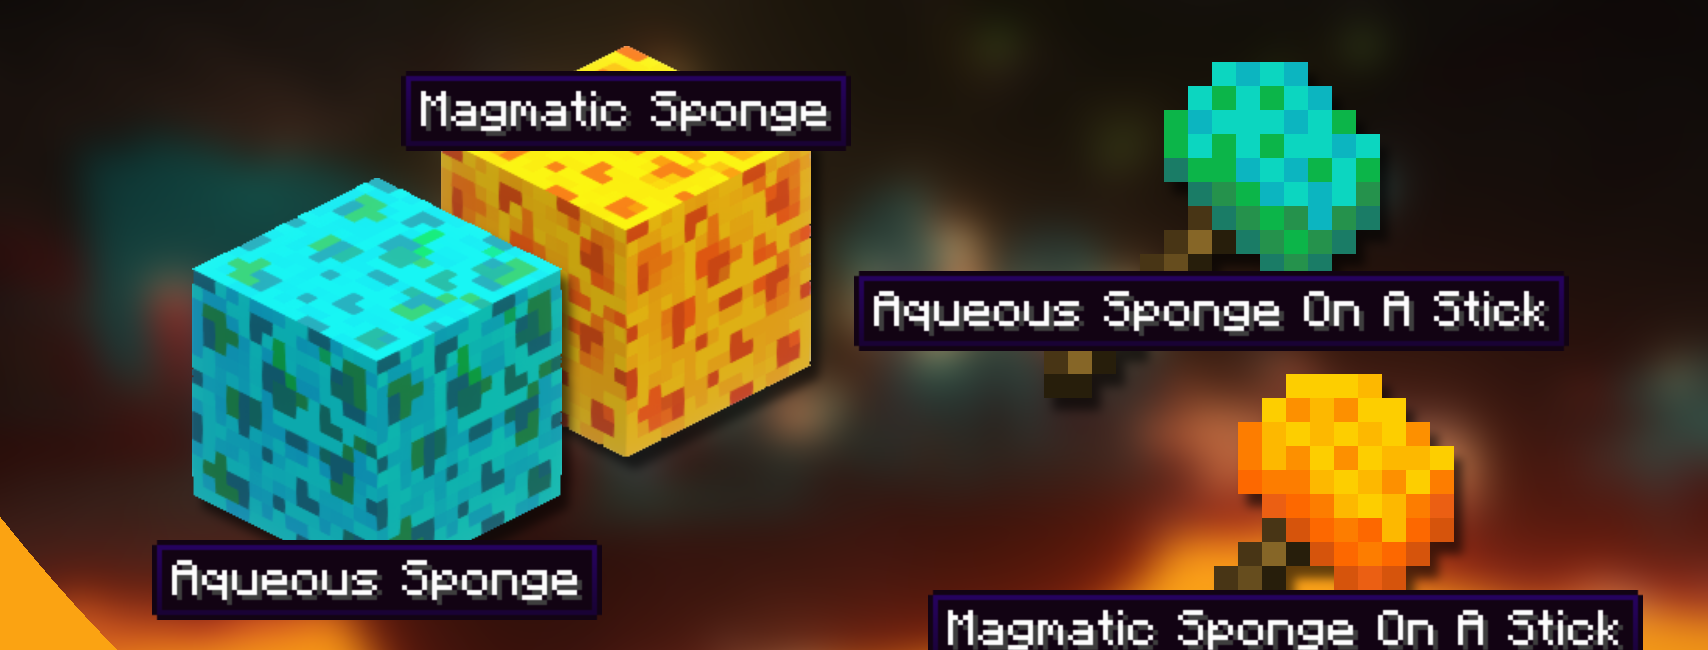 Permanent Sponges screenshot 1